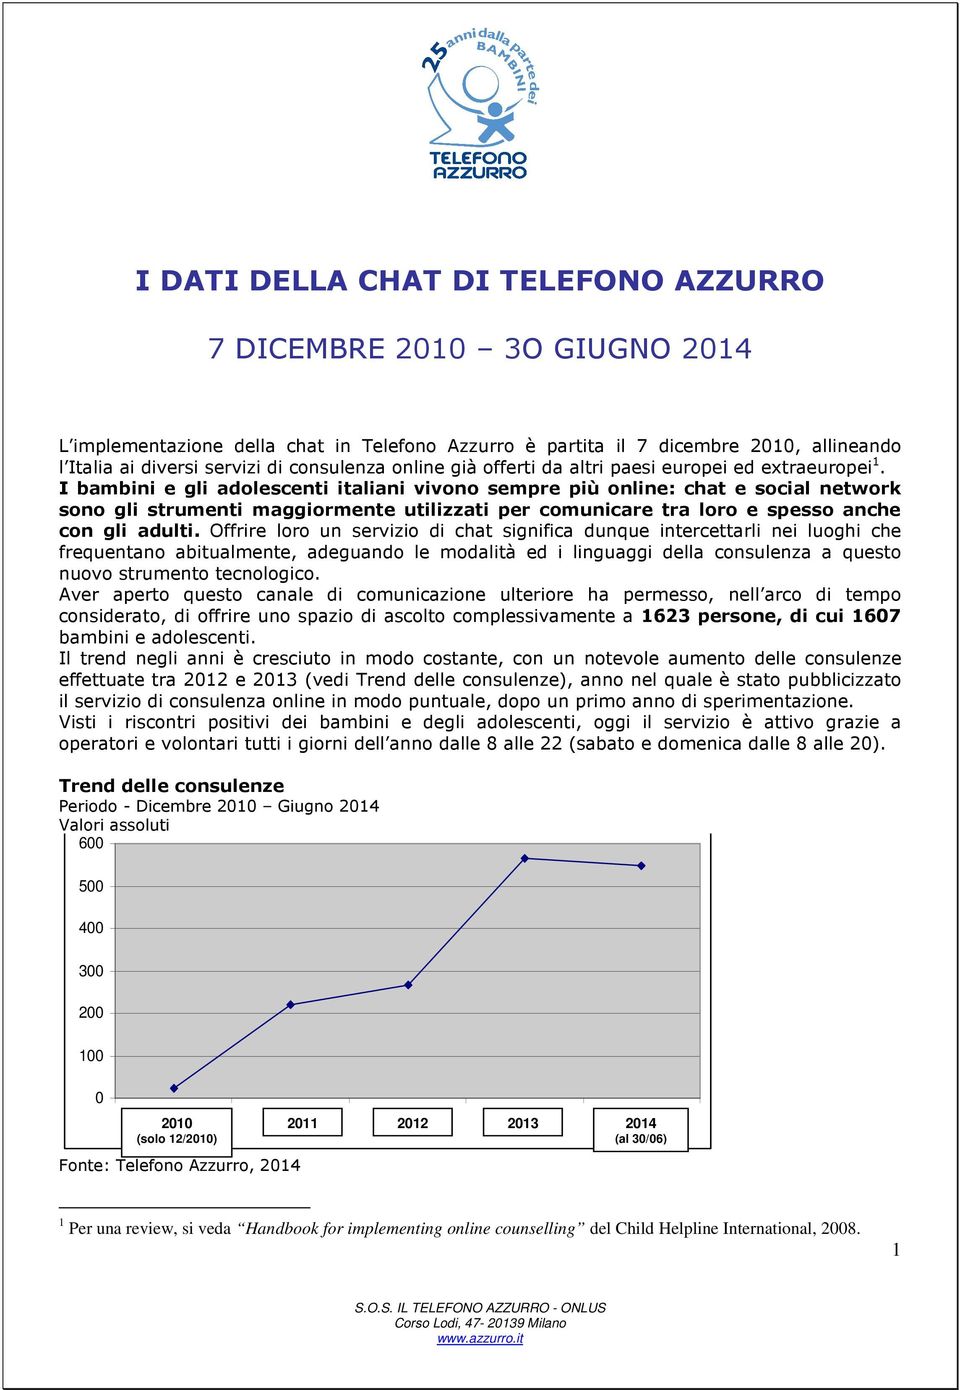 I bambini e gli adolescenti italiani vivono sempre più online: chat e social network sono gli strumenti maggiormente utilizzati per comunicare tra loro e spesso anche con gli adulti.